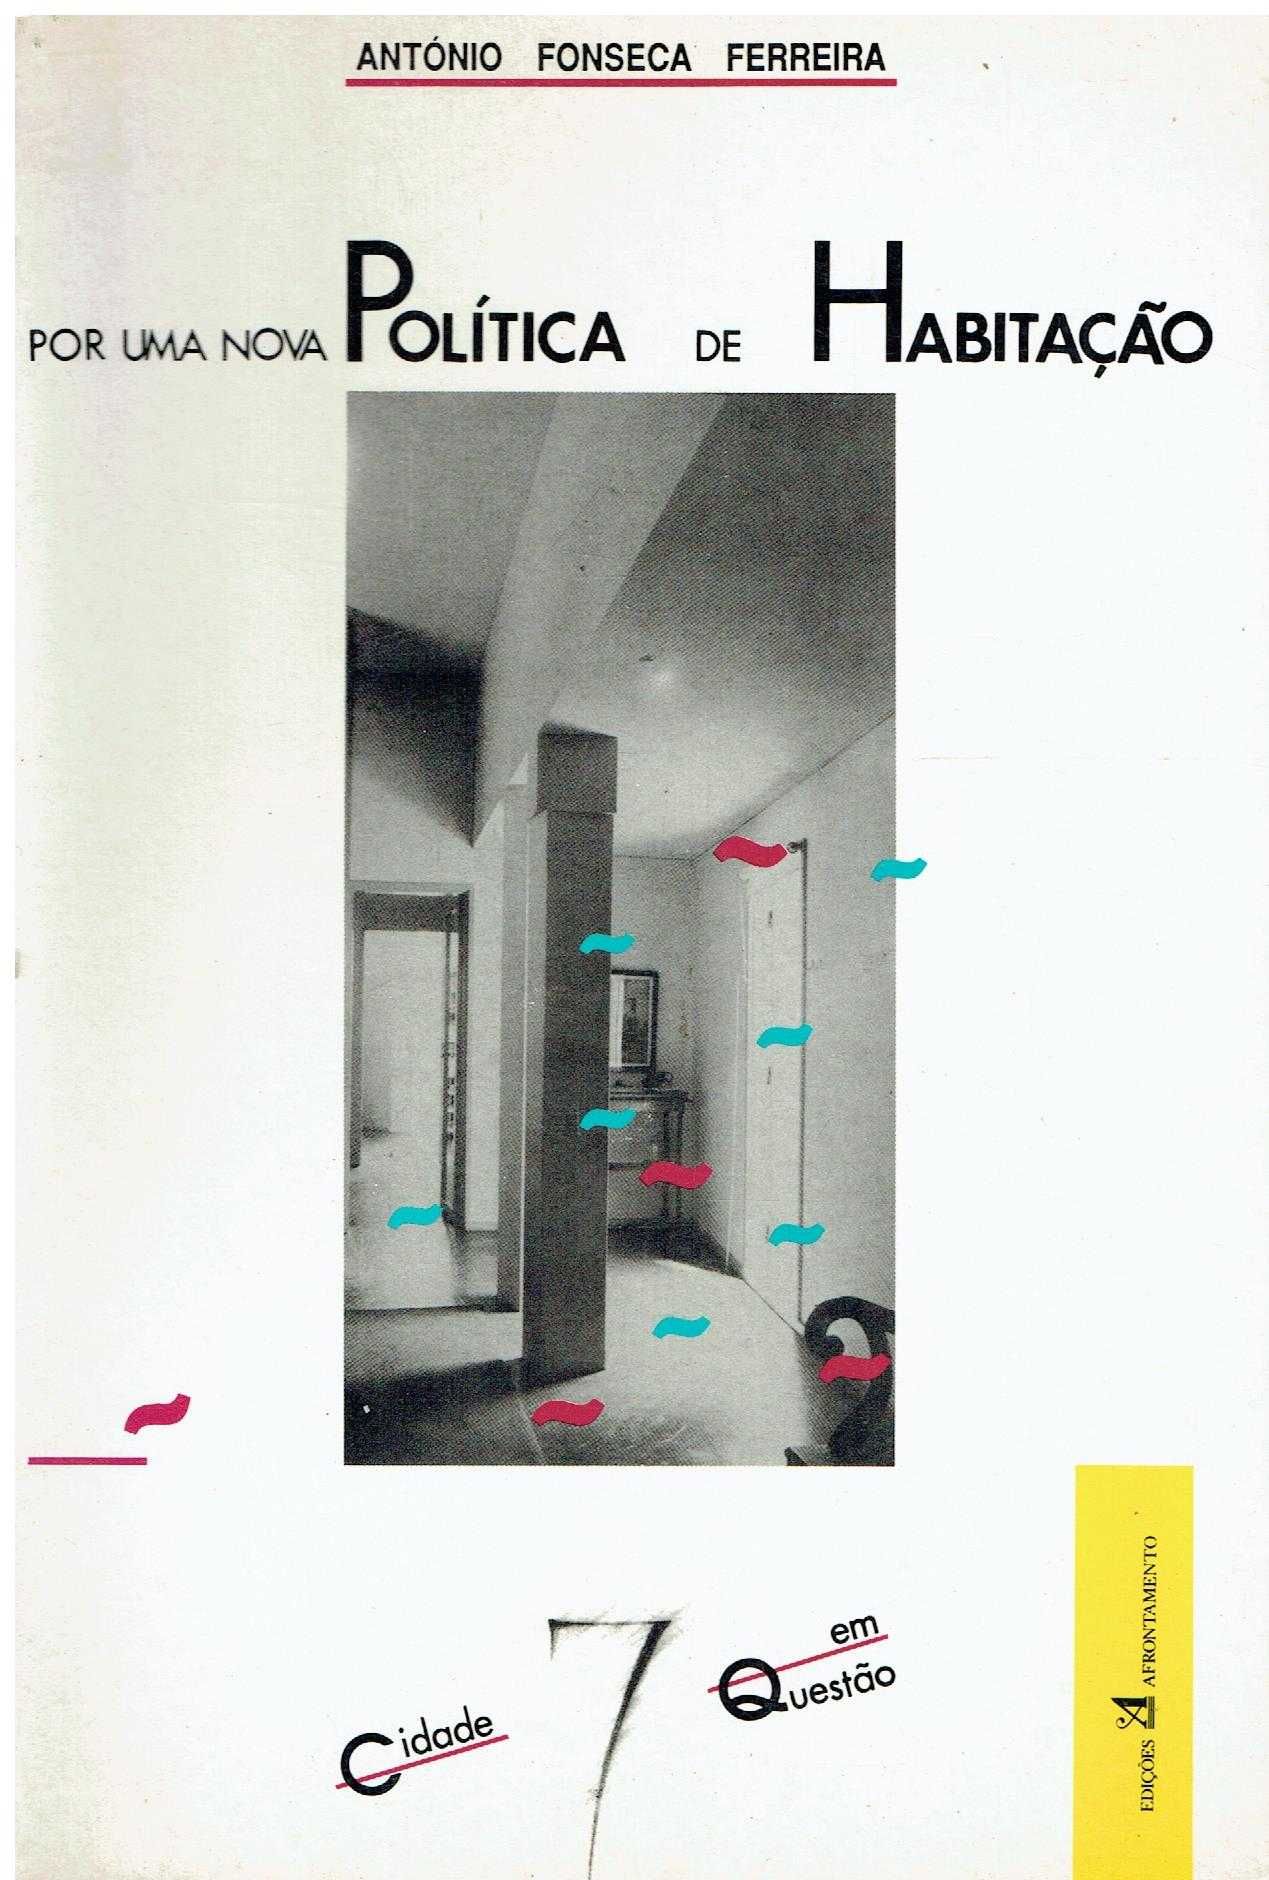 12120

Por uma Nova Política de Habitação
de A. Fonseca Ferreira